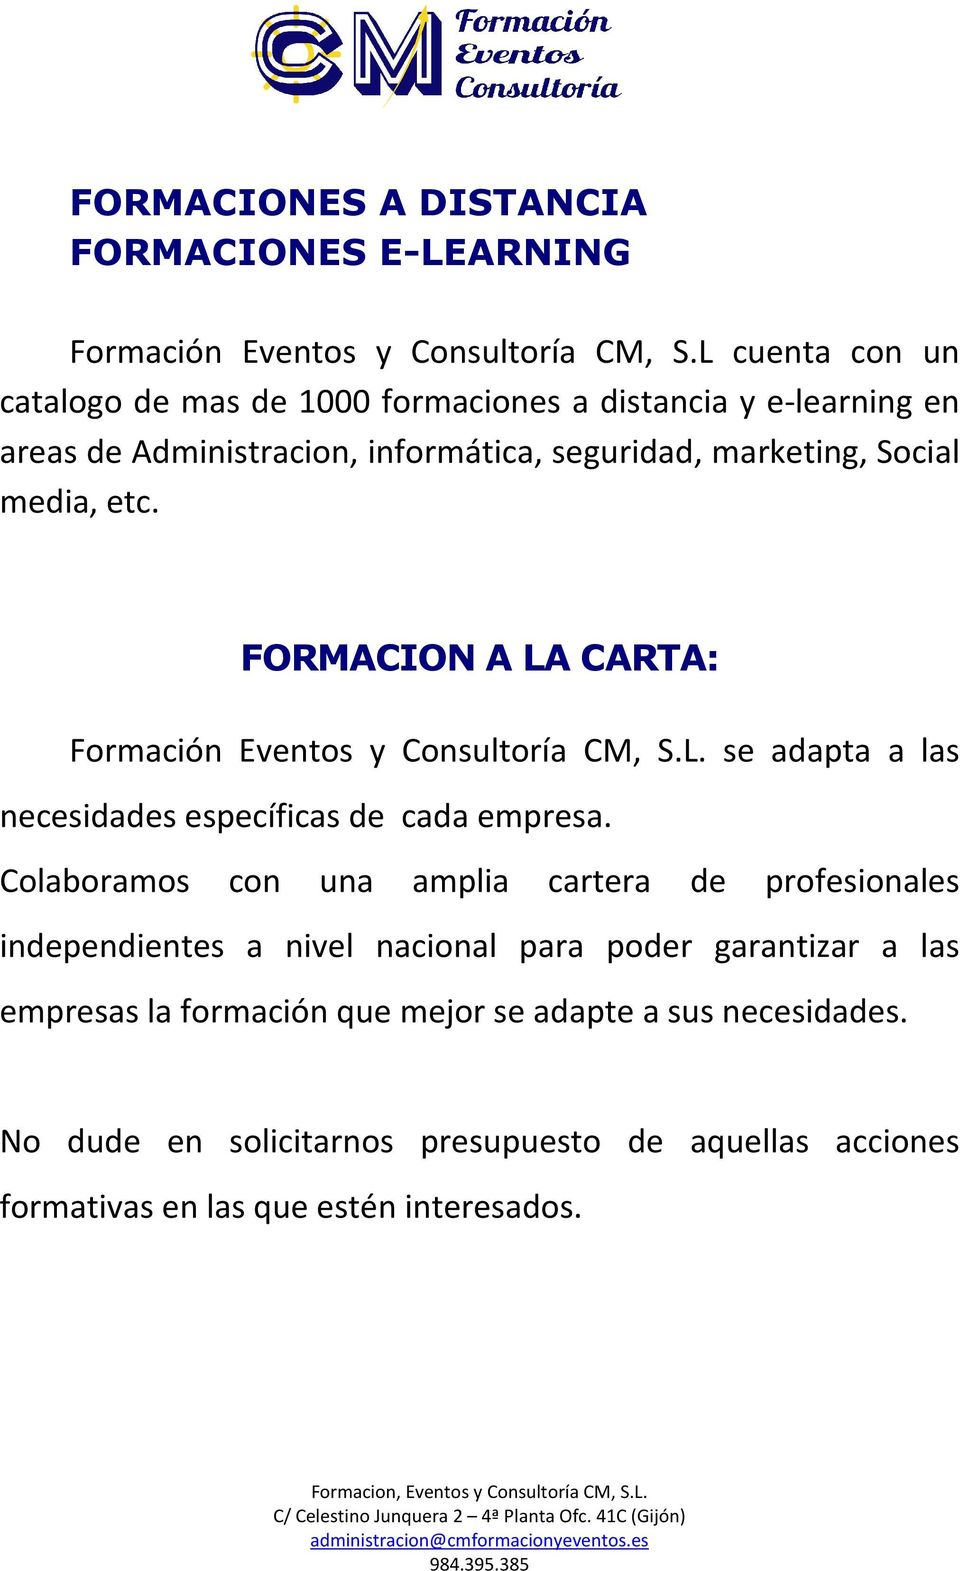 FORMACION A LA CARTA: Formación Eventos y Consultoría CM, S.L. se adapta a las necesidades específicas de cada empresa.